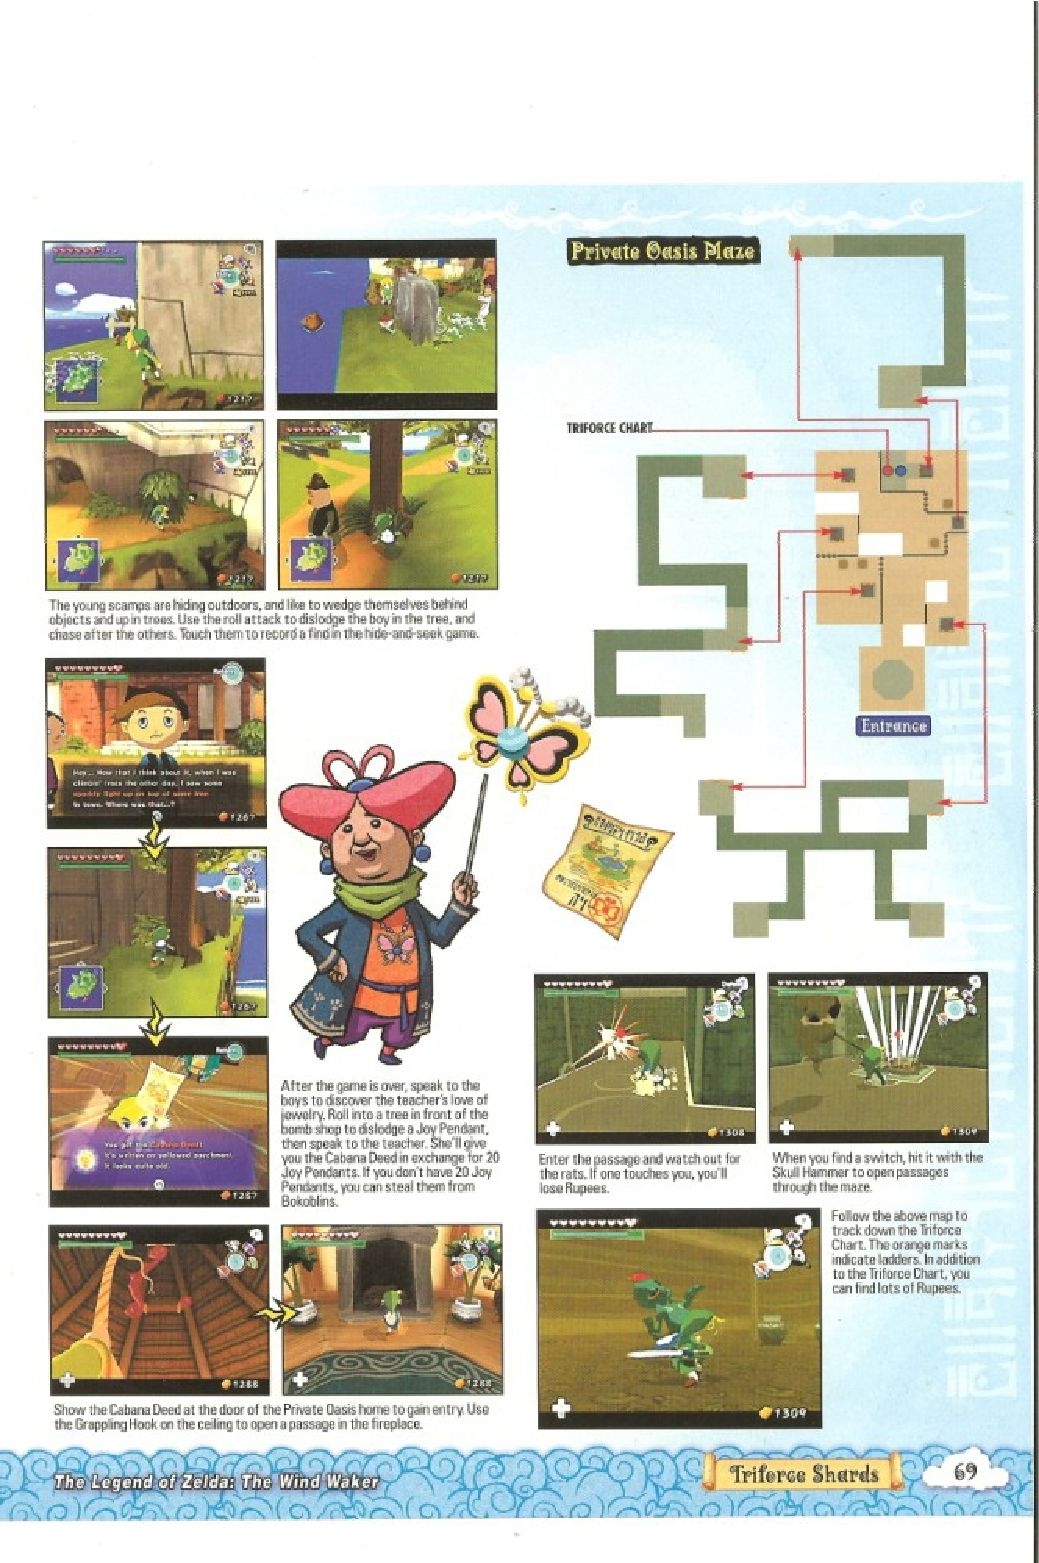 The Legend of Zelda - wind waker - Strategy Guide 71